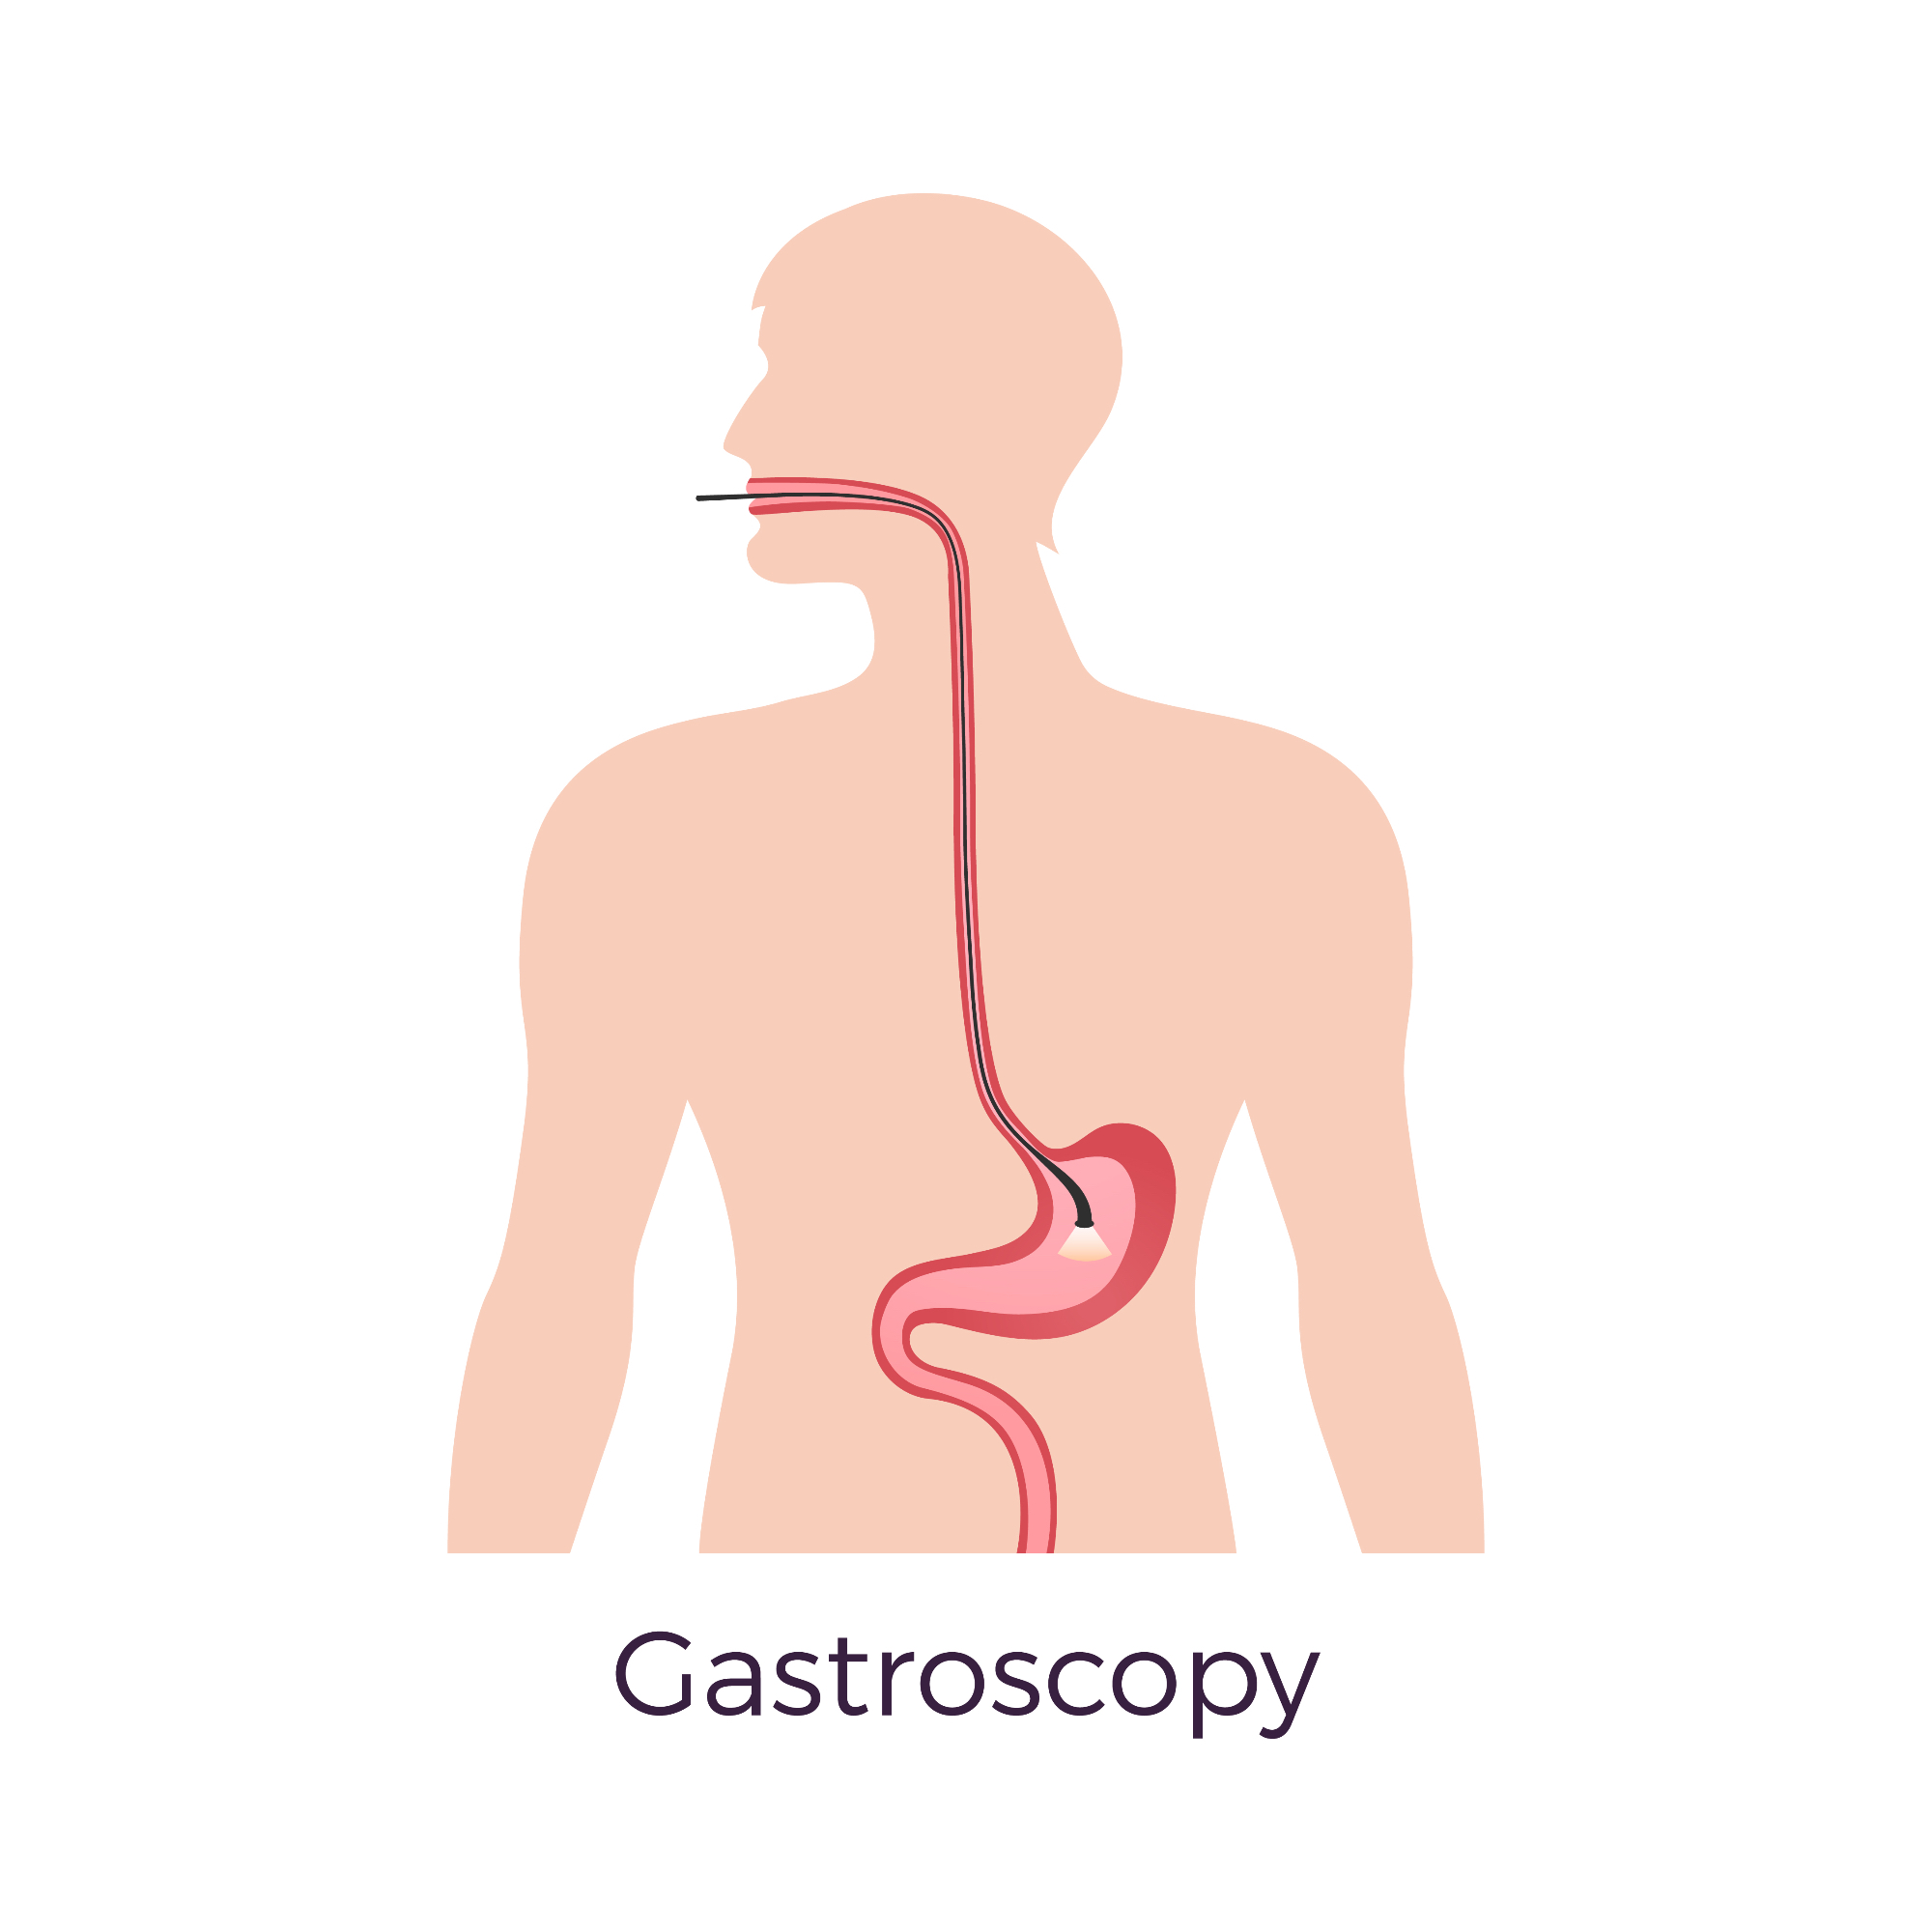 Kaj je gastroskopija in zakaj je pomembna?